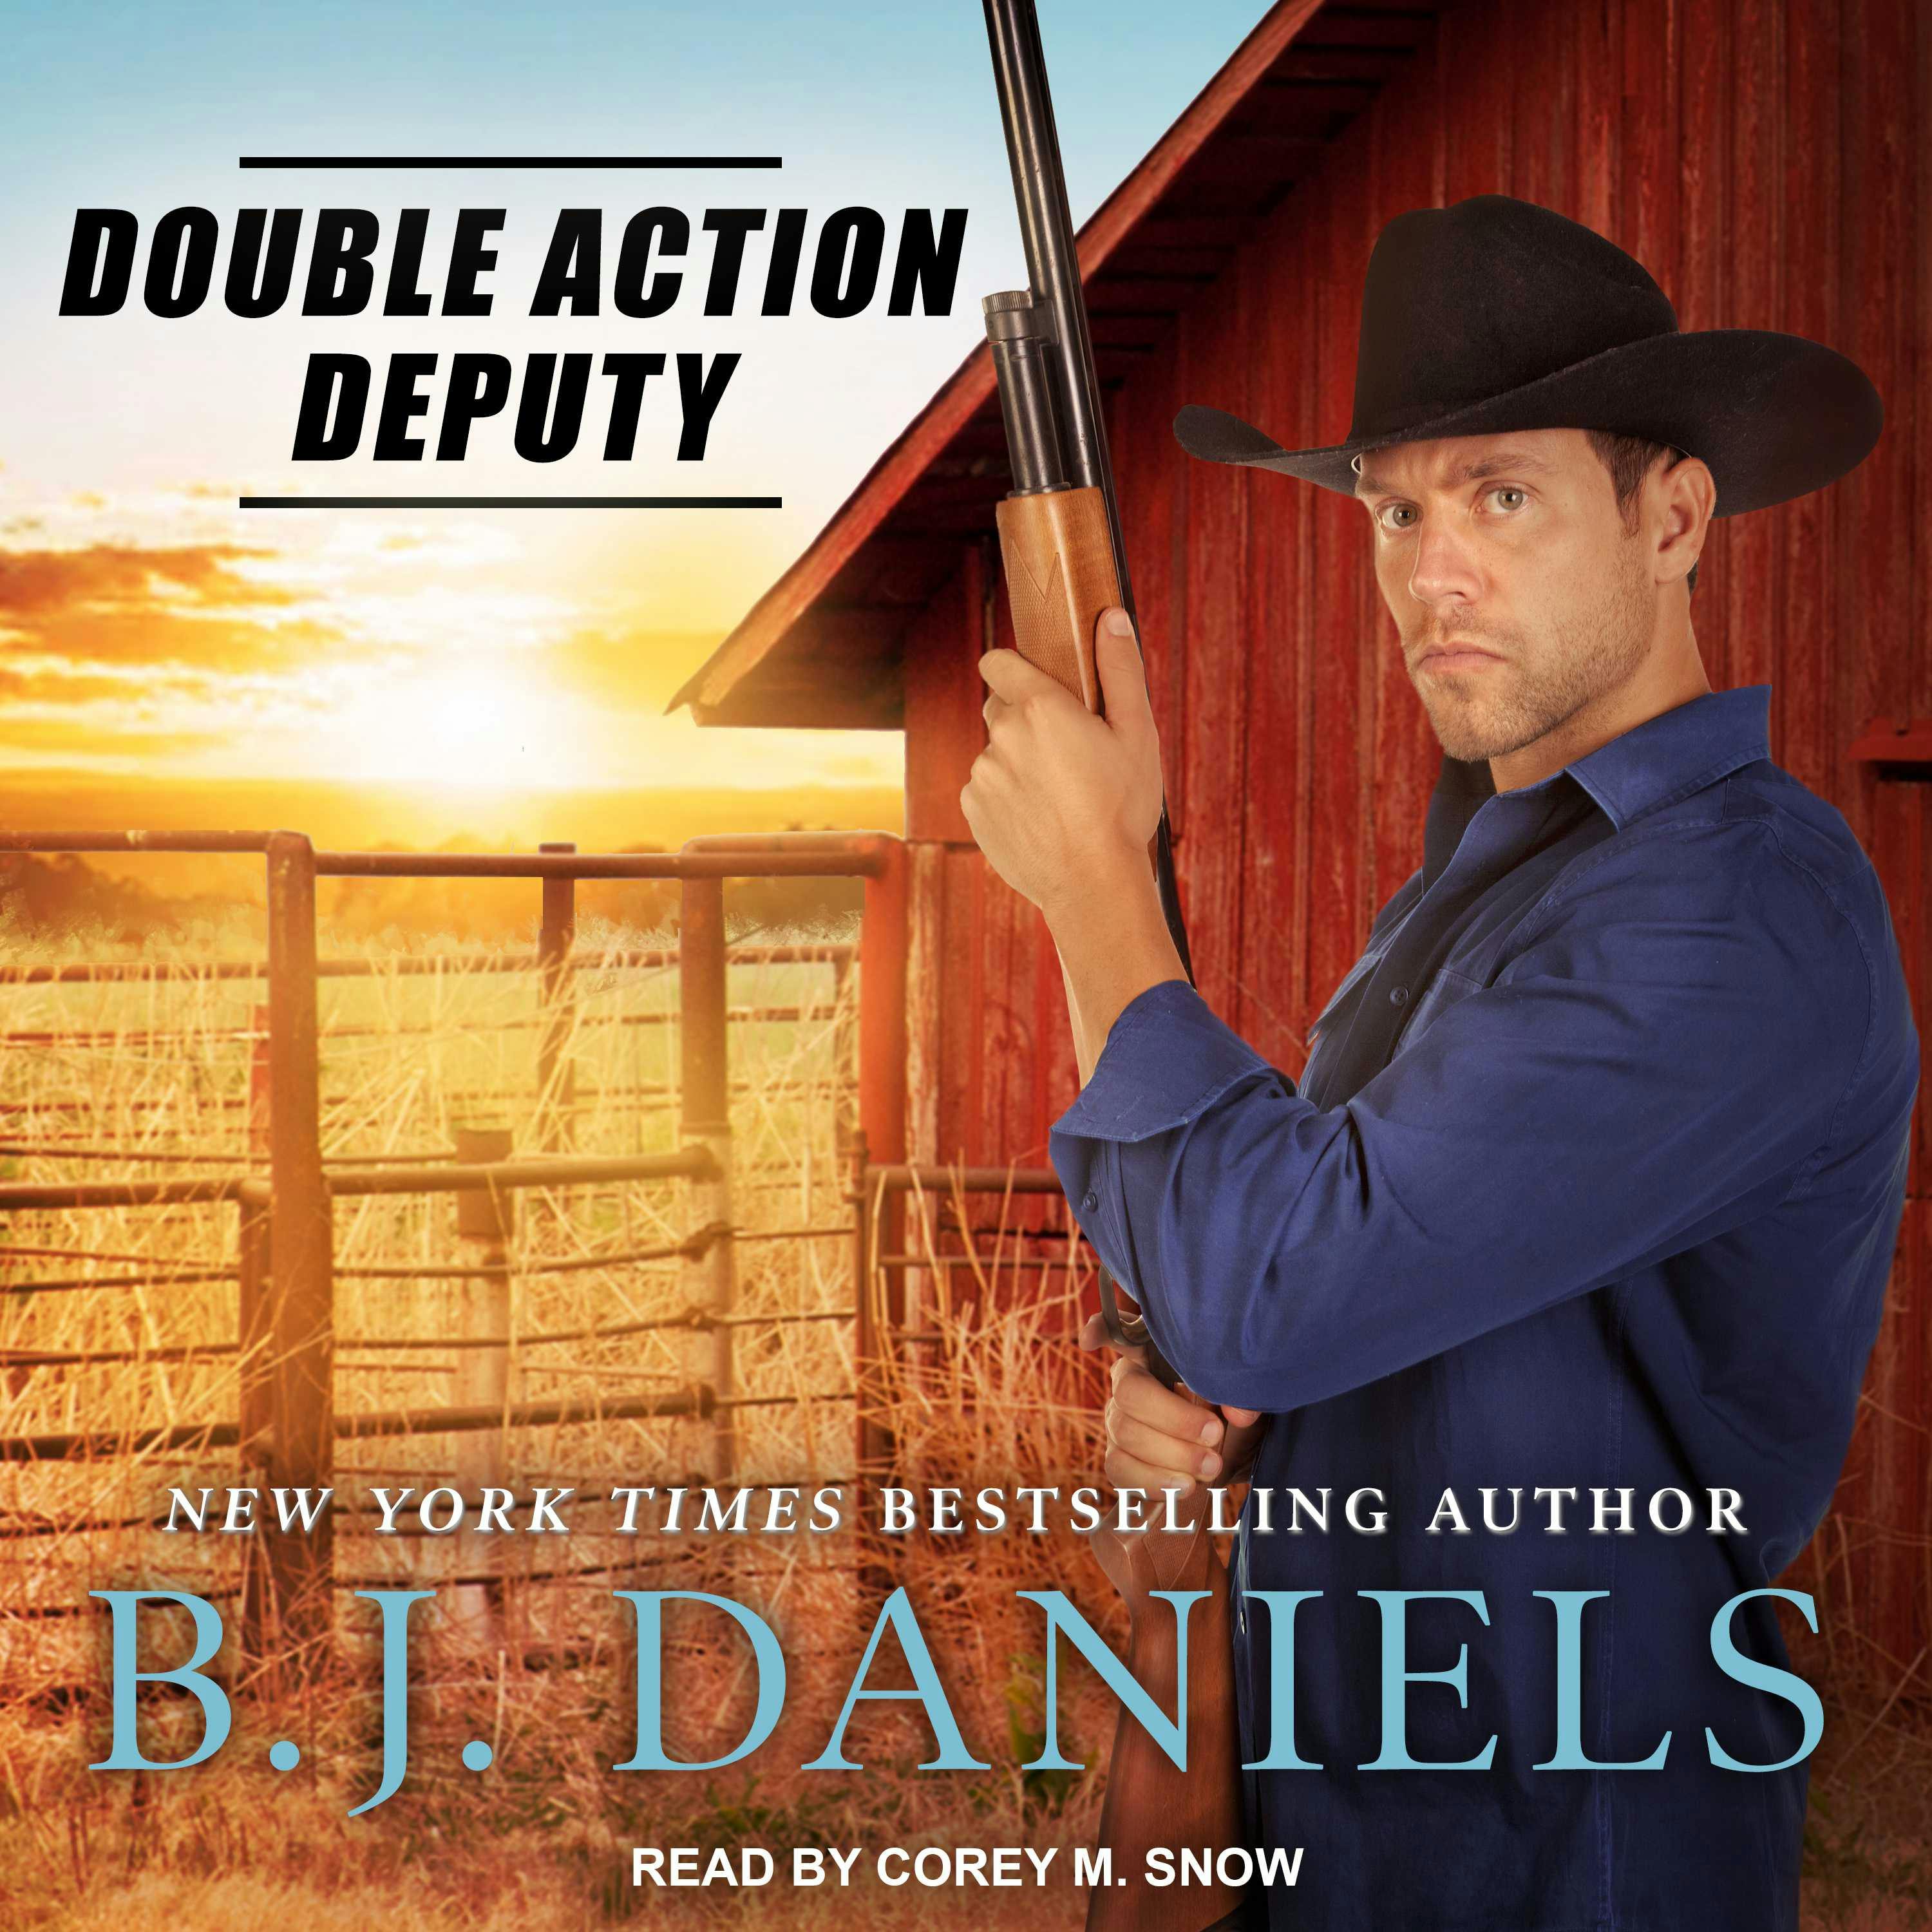 Double Action Deputy - B. J. Daniels